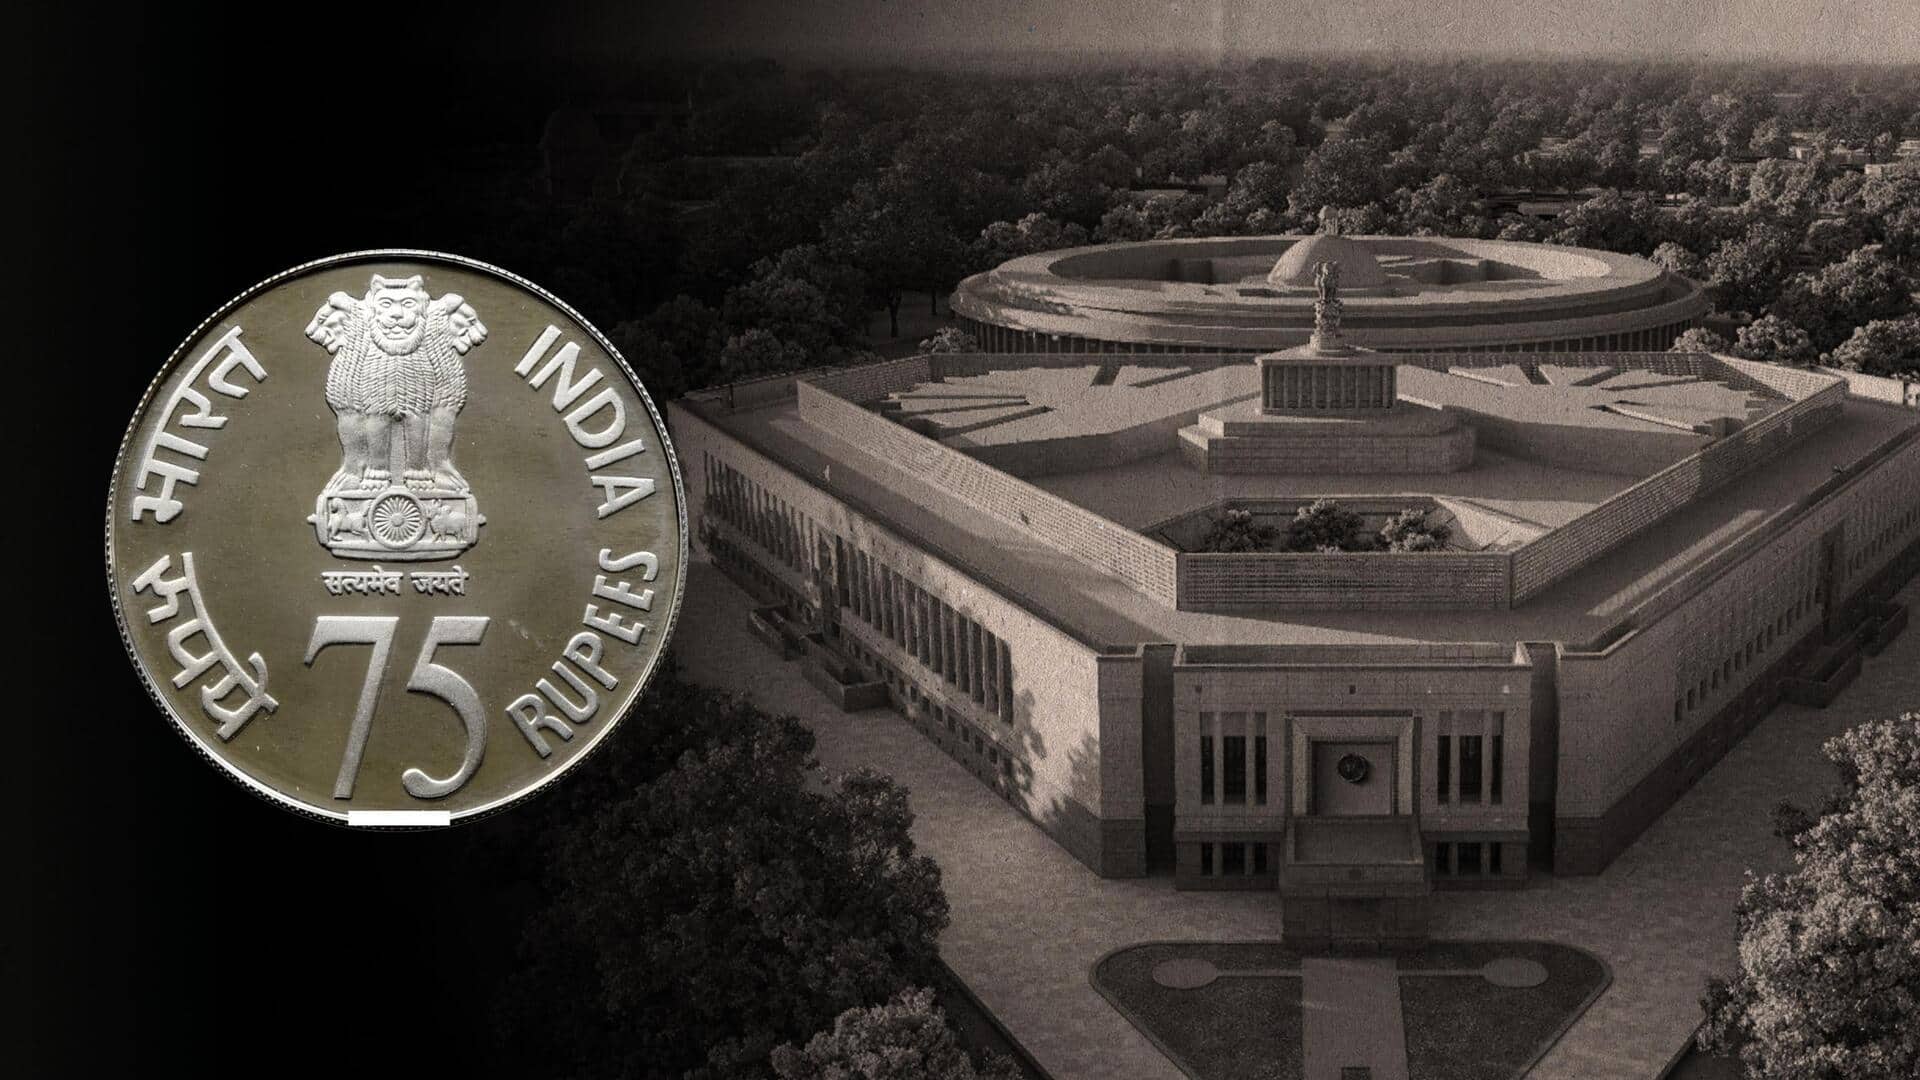 नए संसद भवन के उद्घाटन पर 75 रुपये का खास सिक्का जारी करेगी केंद्र सरकार